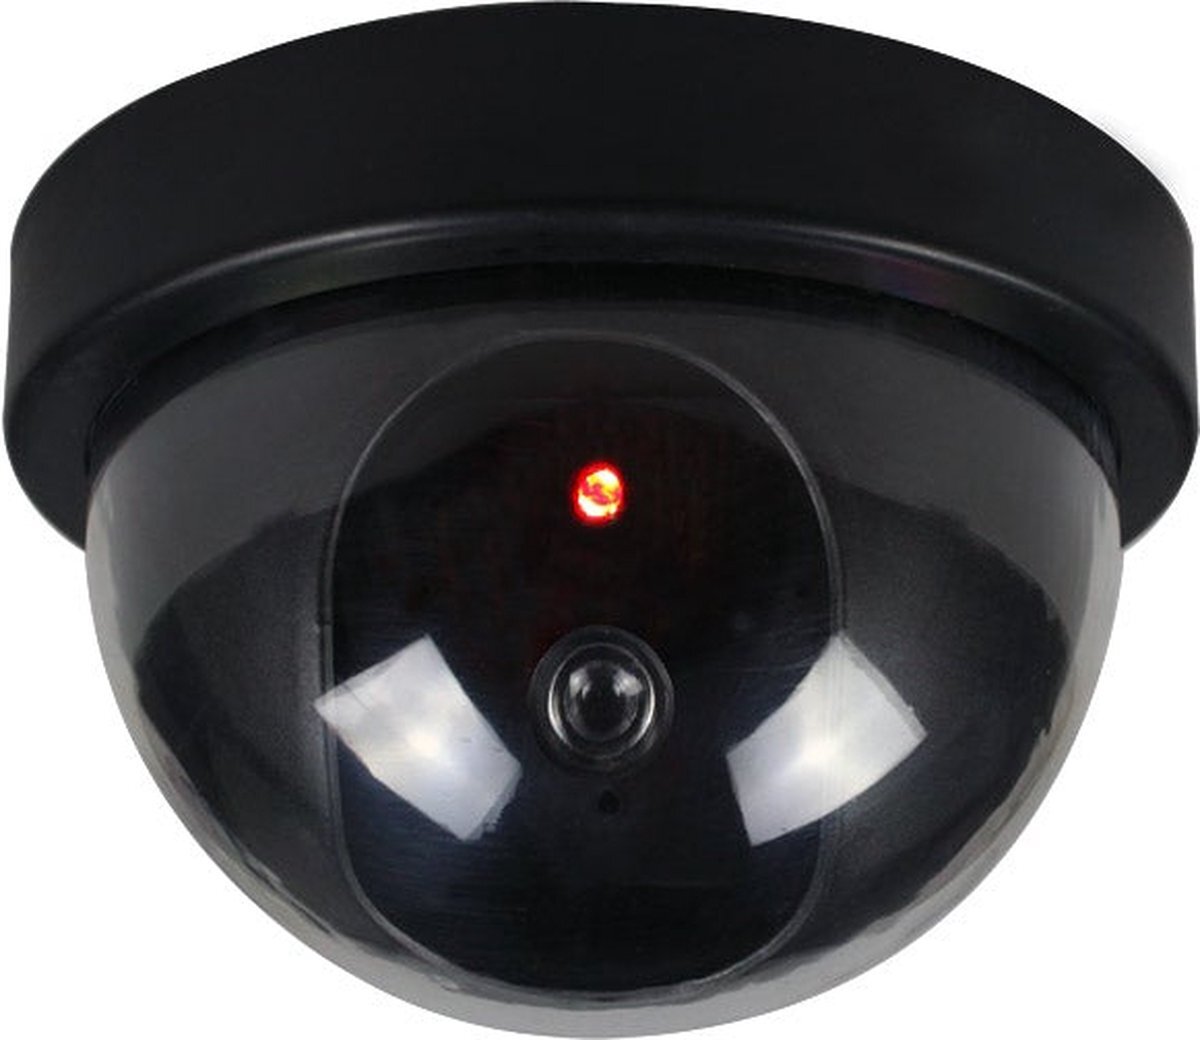 kindercrea dummy camera lookalike bewakingscamera met verlichting zwart